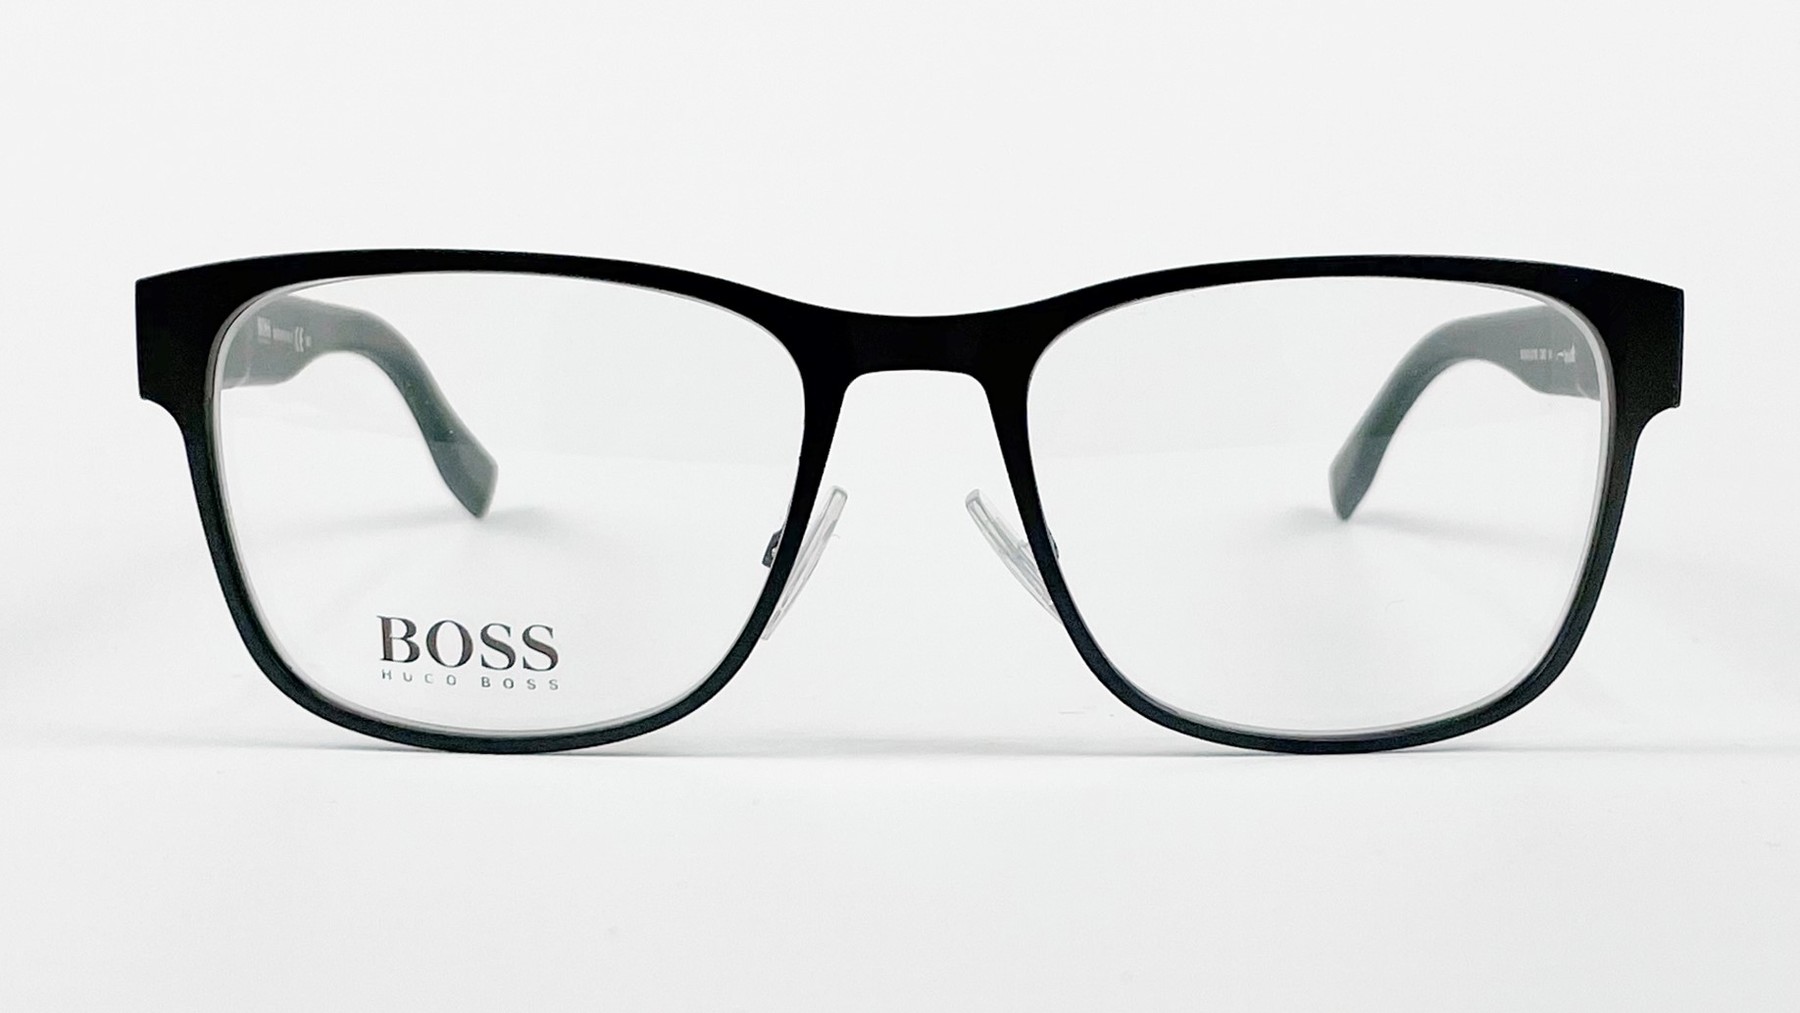 HUGO BOSS 0798 QMS, Korean glasses, sunglasses, eyeglasses, glasses